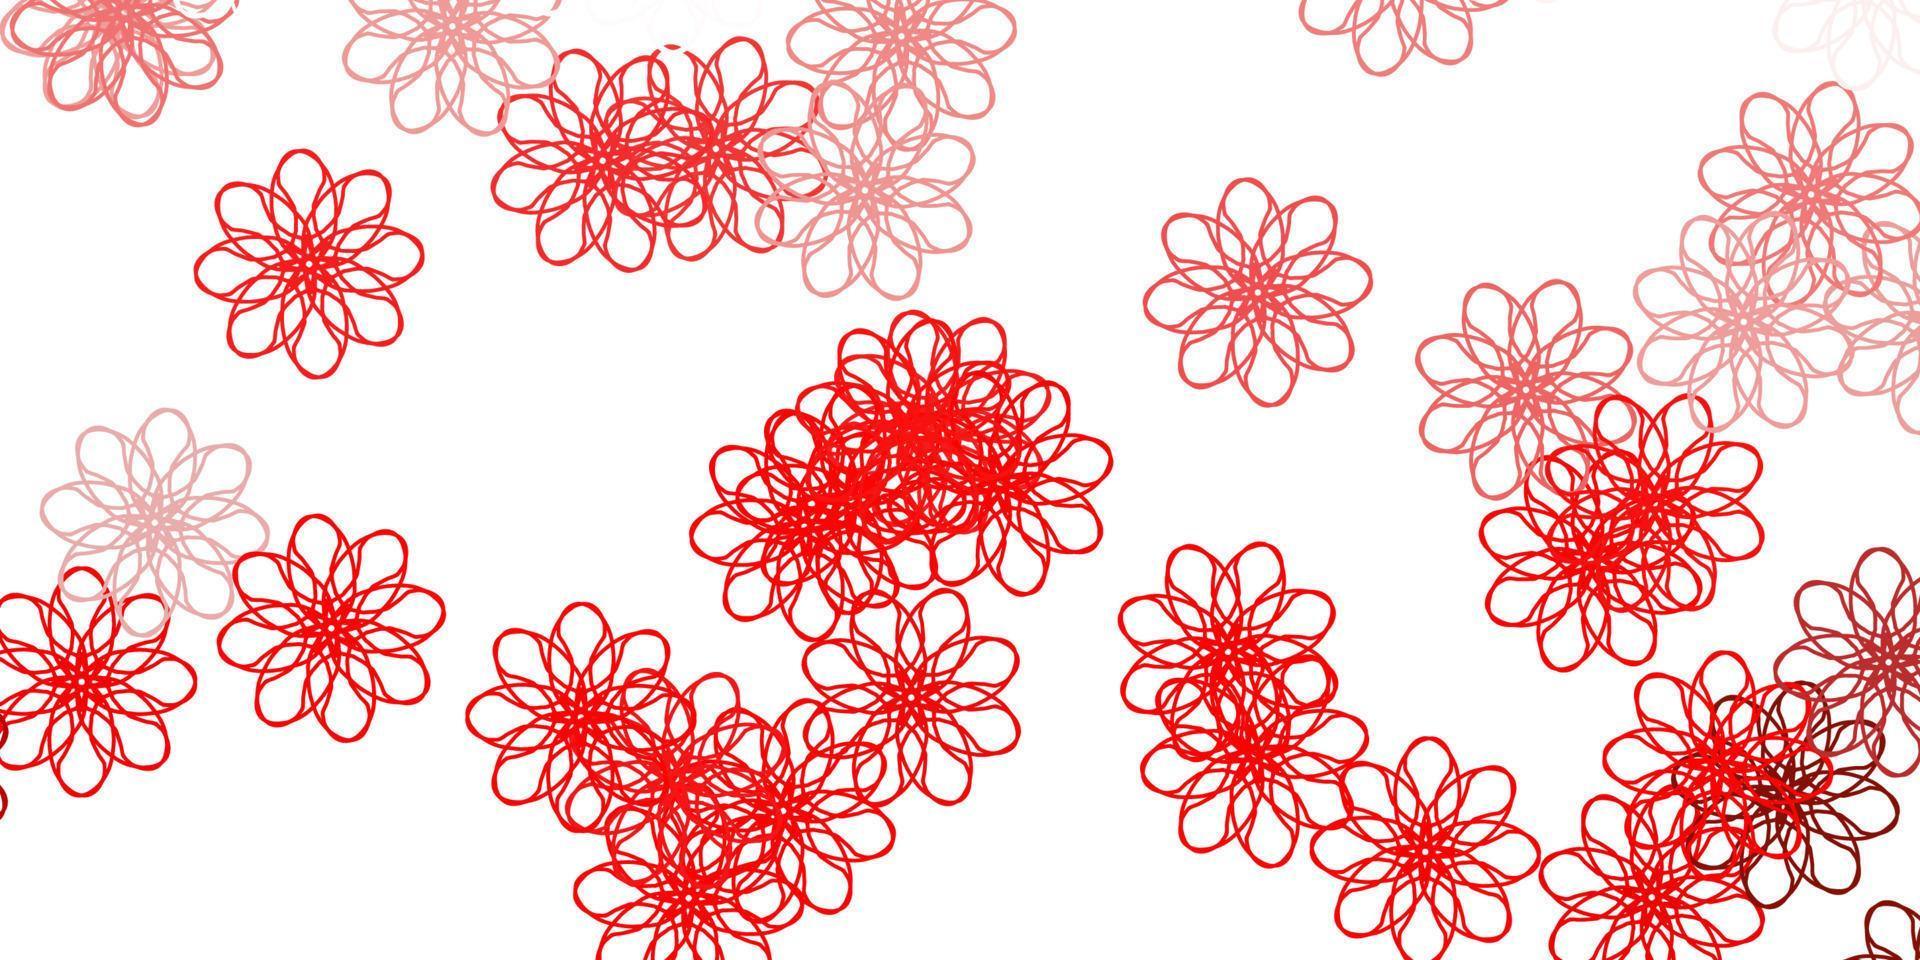 fundo do doodle do vetor vermelho claro com flores.